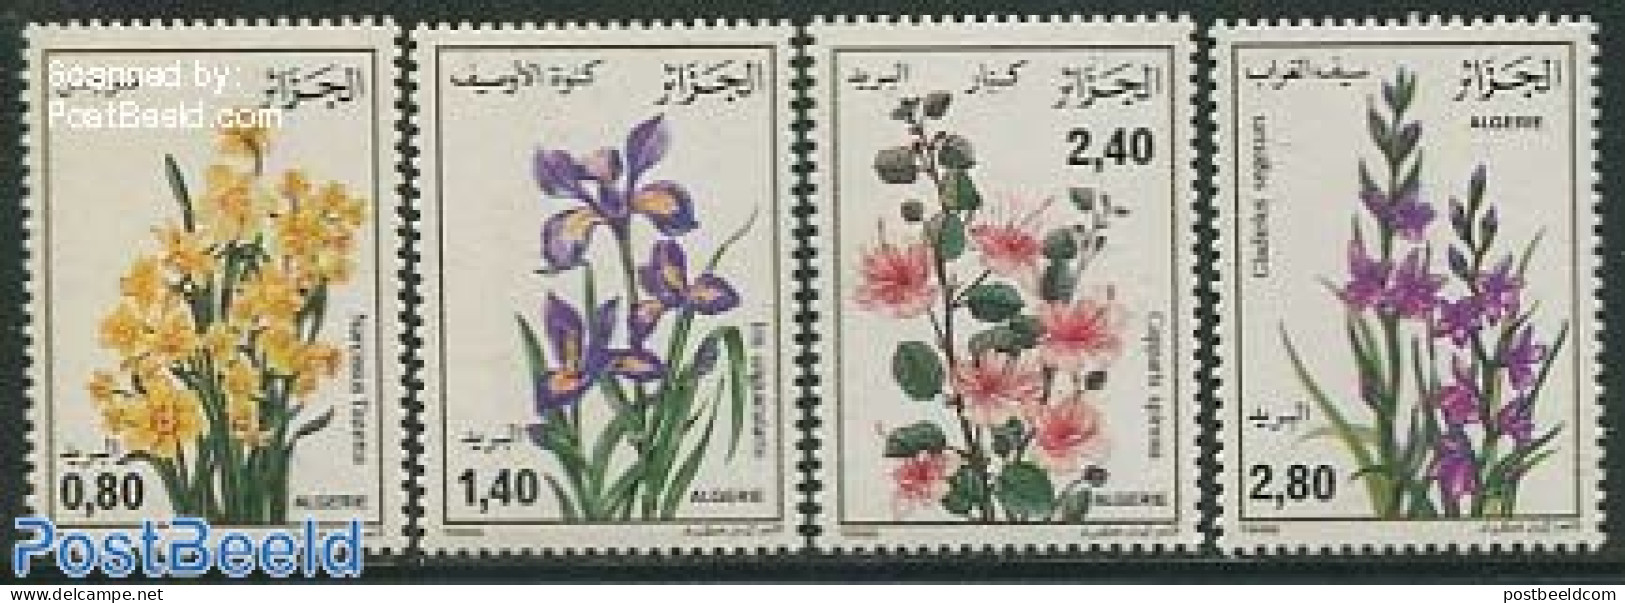 Algeria 1986 Flowers 4v, Mint NH, Nature - Flowers & Plants - Ongebruikt